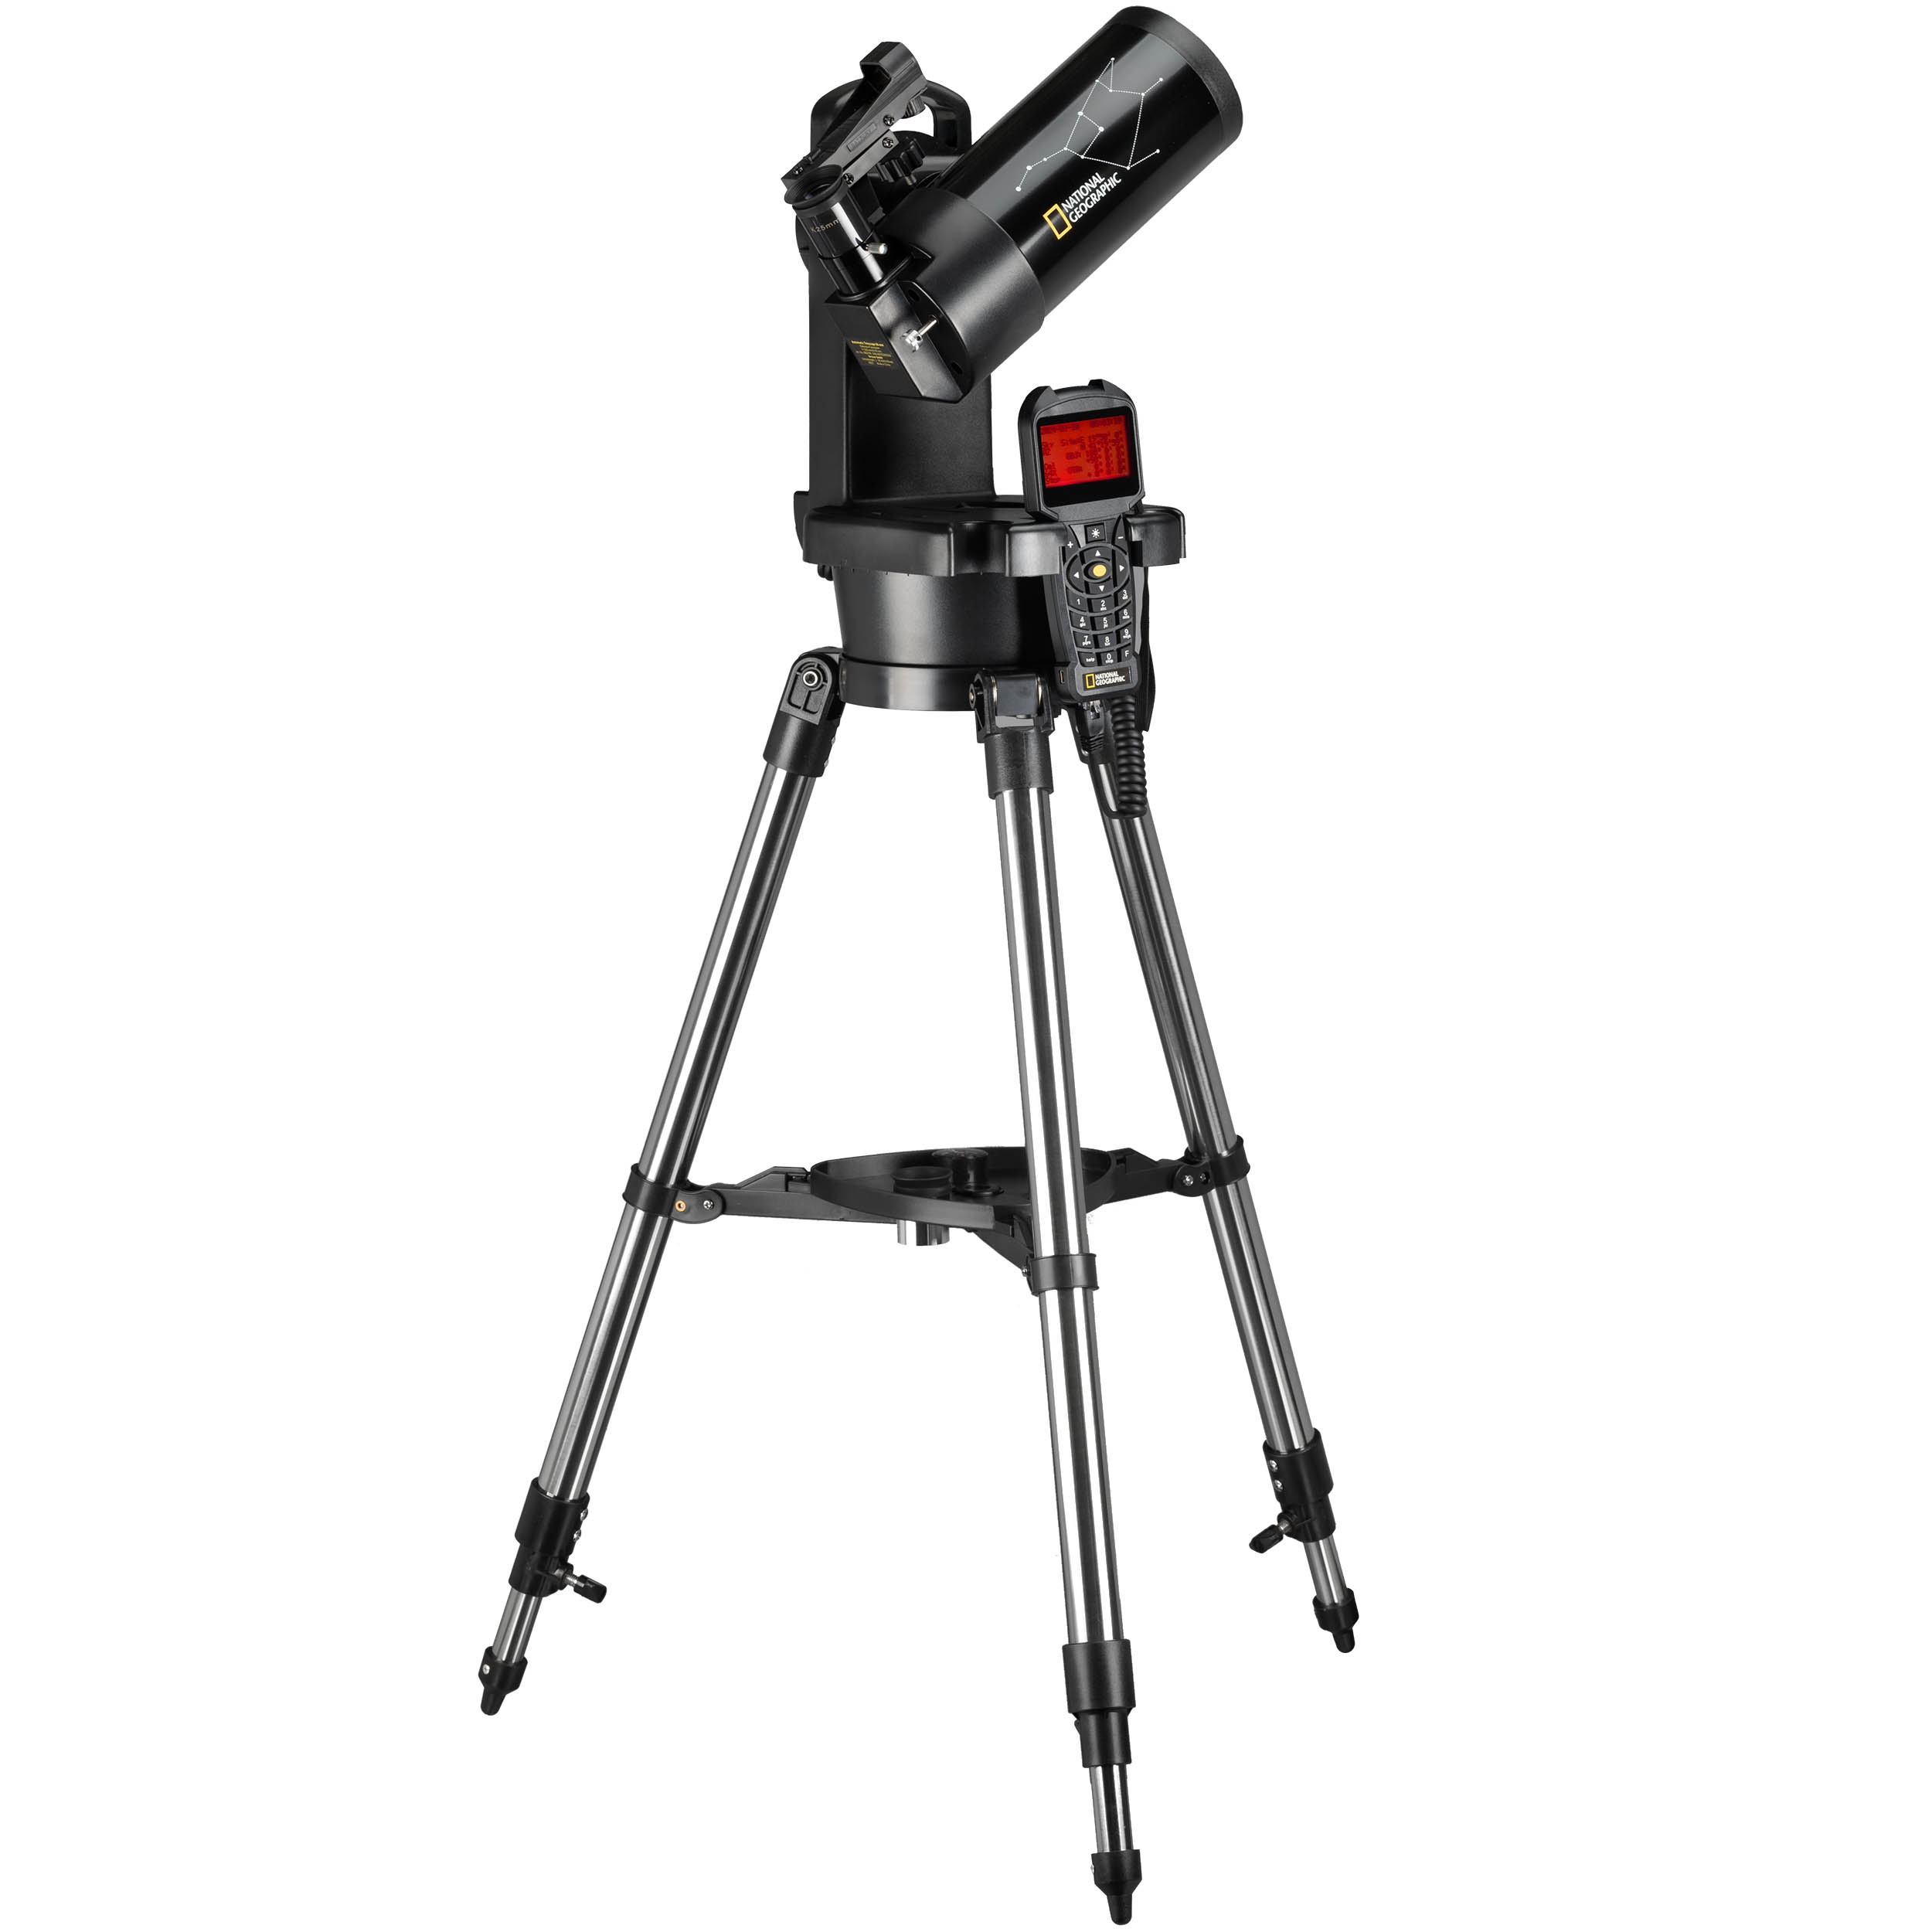 Telescopio astronómico profesional Hd Potente ocular de 70 mm